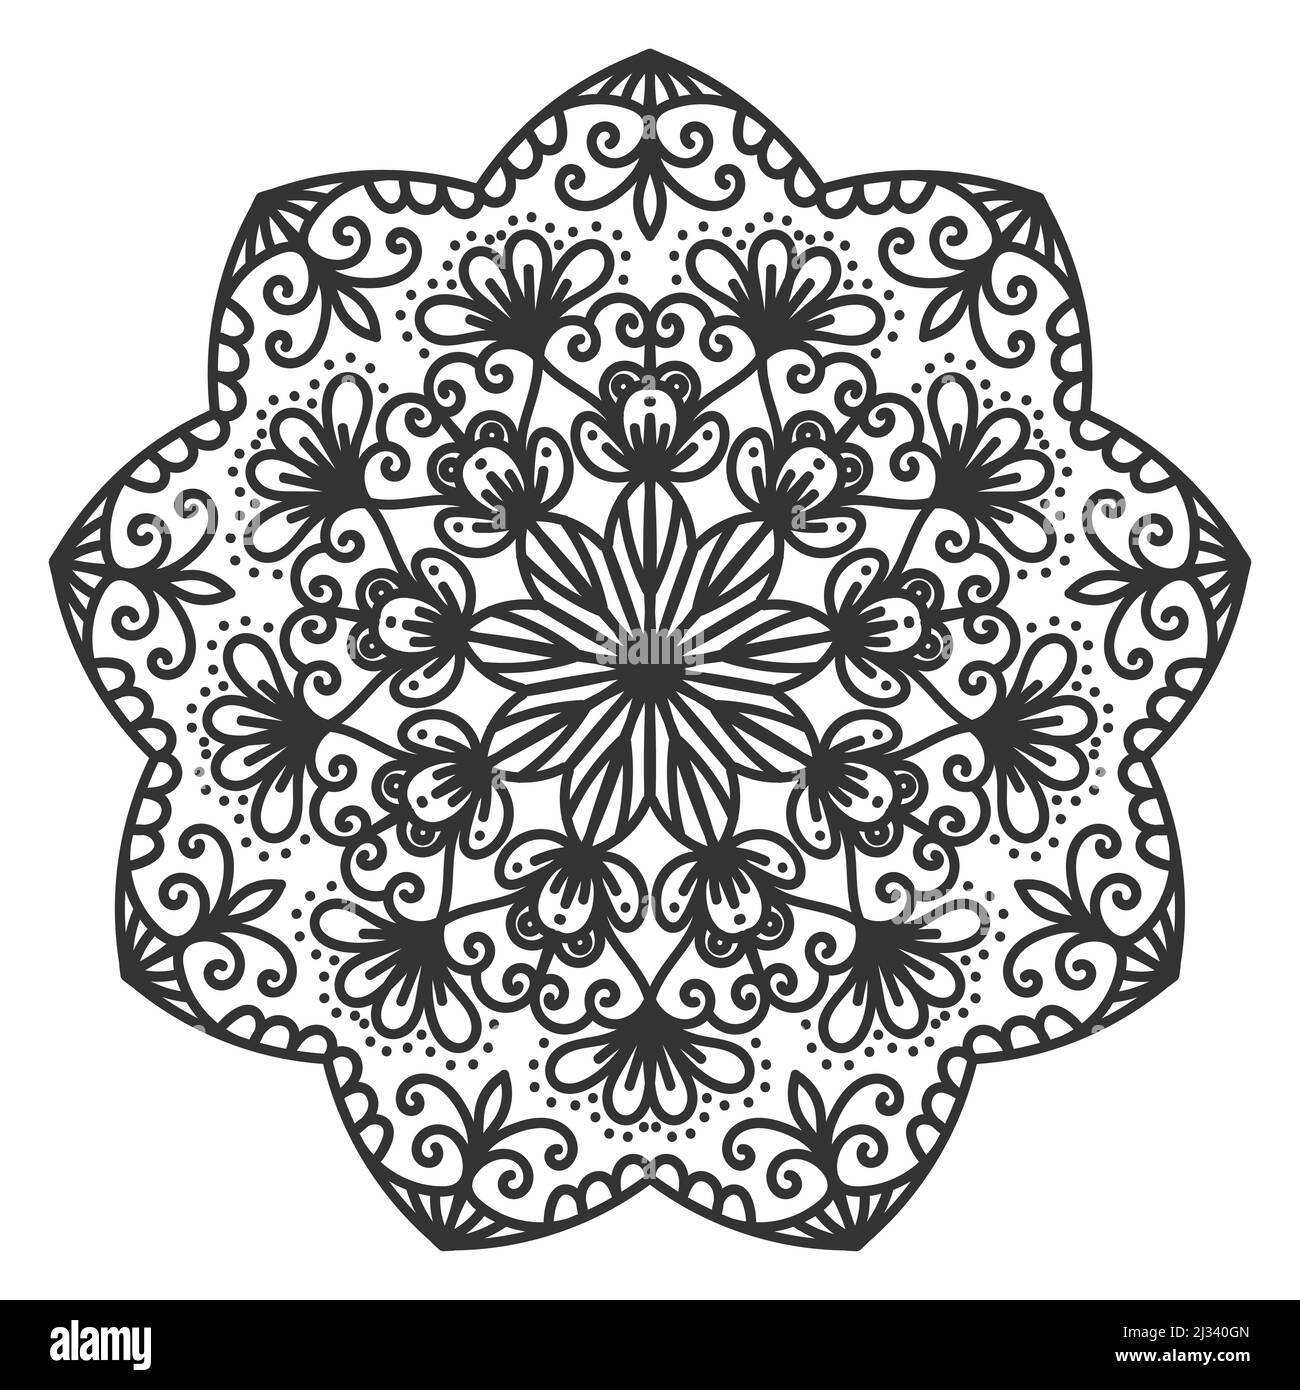 Rundes Mandala mit Blumenmuster. Kreisförmiges Ornament im orientalischen Stil. Henna Tattoo, Mehndi. Dekorative Muster für Tattoo, Label-Logo. Stock Vektor